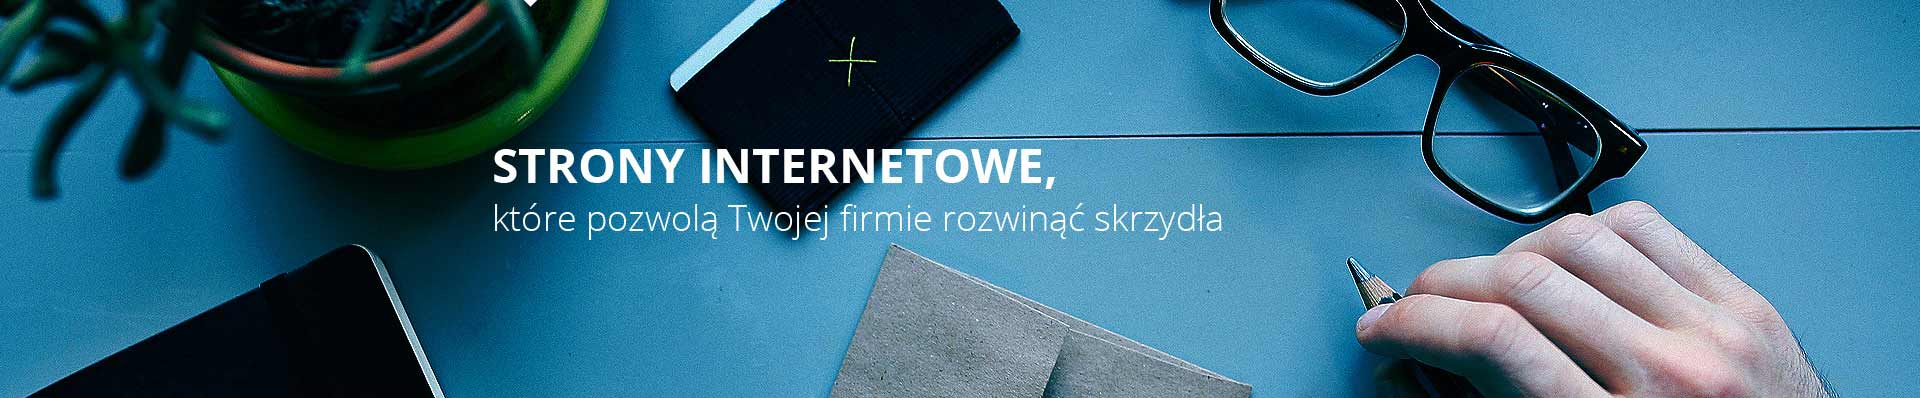 strony internetowe w Lublinie